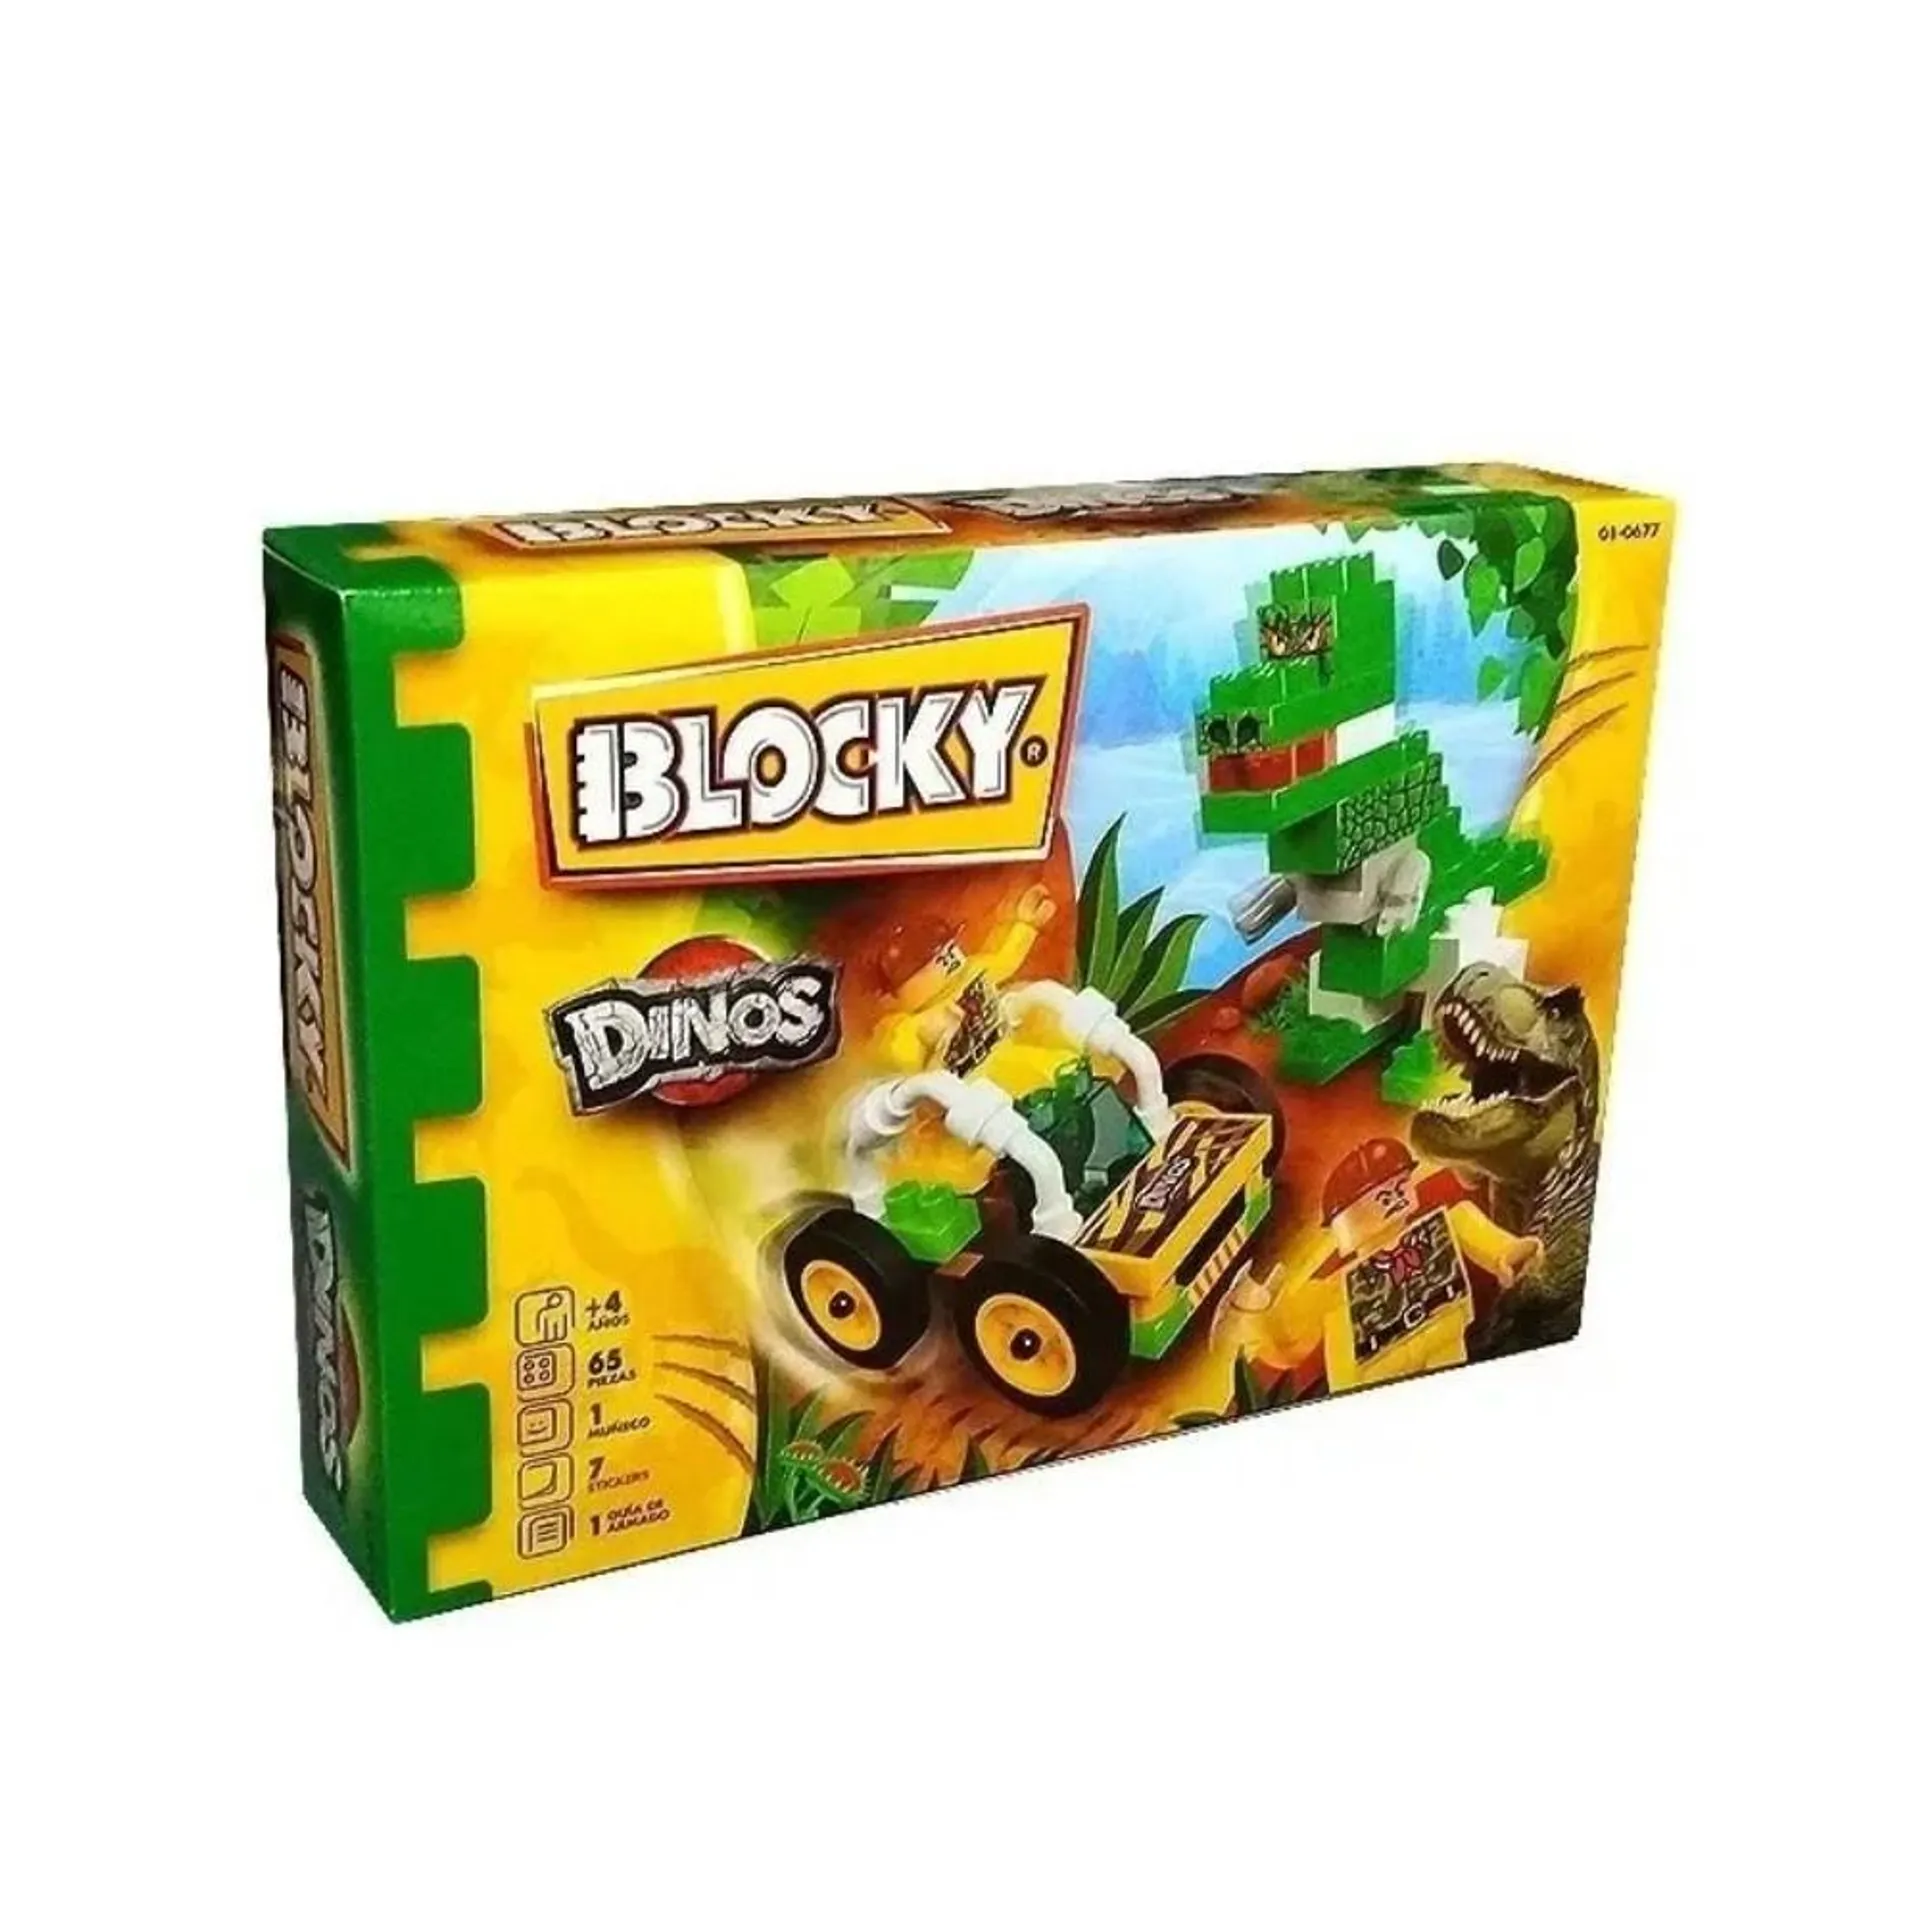 Blocky Bloques Dinos Con 65 Piezas 01-0677 Original